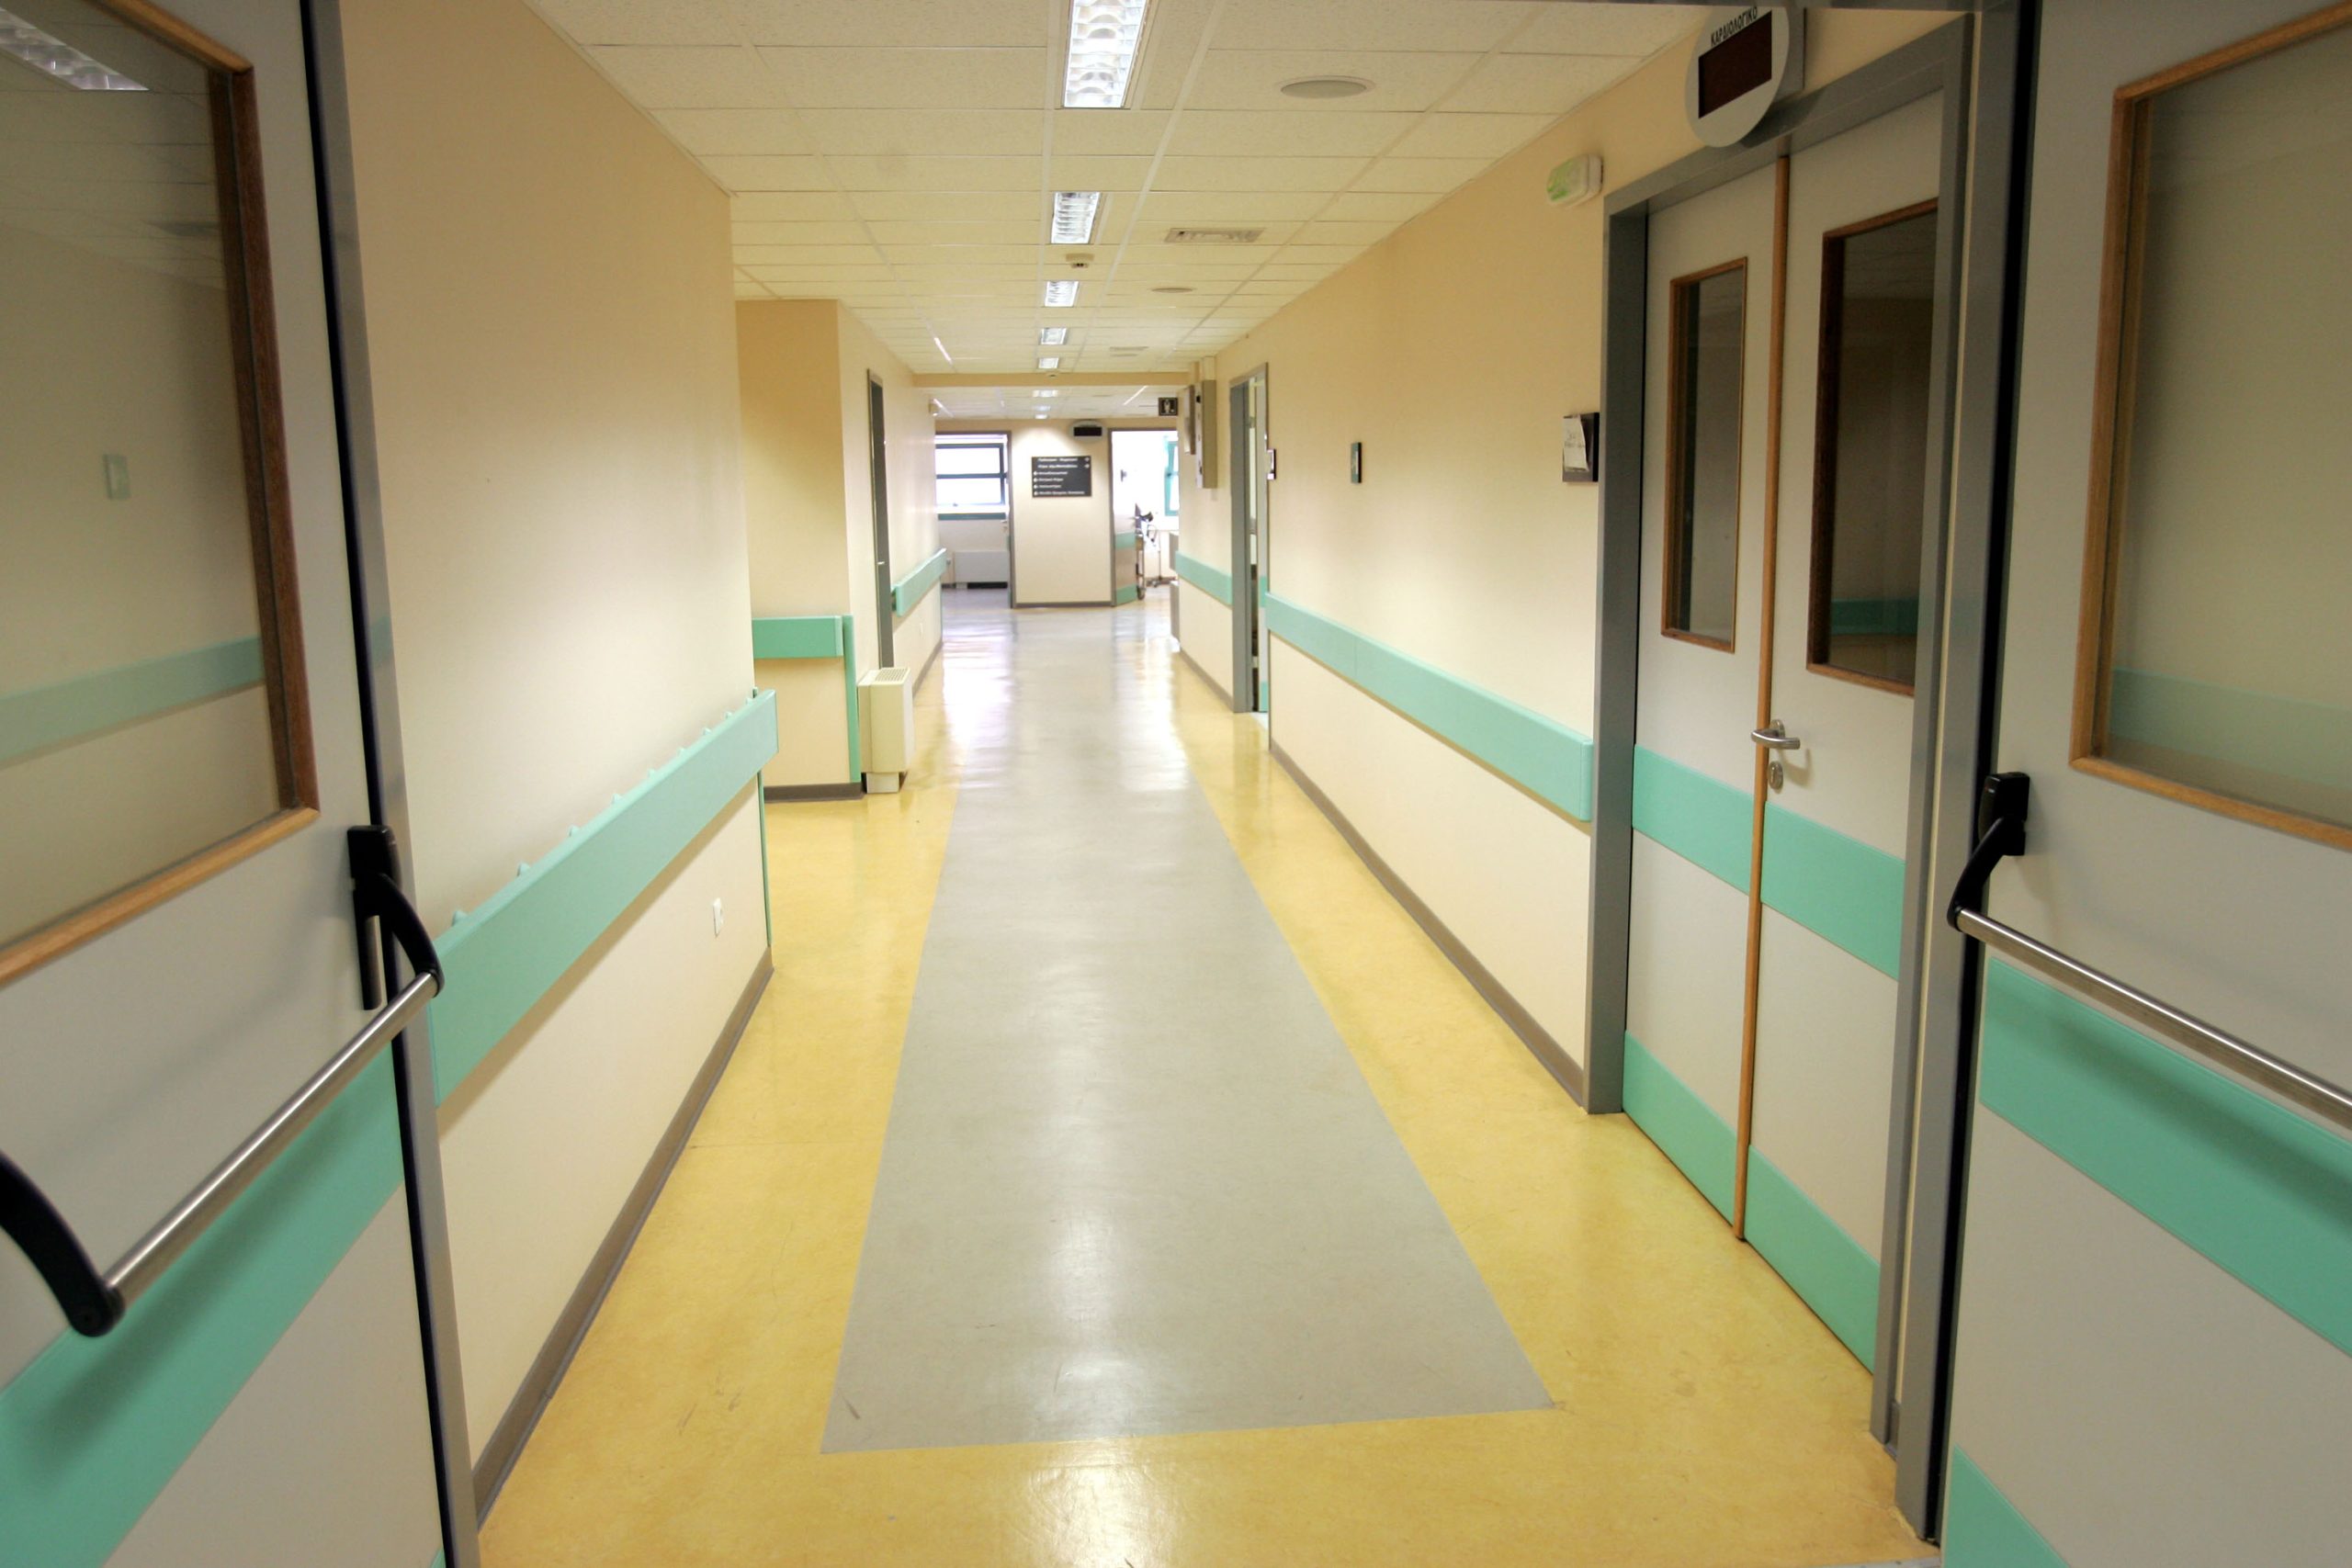 Ιταλία: Σε λειτουργία νοσοκομείο αποκλειστικά για ασθενείς του κορωνοϊού – Ξεκίνησαν να εργάζονται Ρώσοι ειδικοί (φώτο)